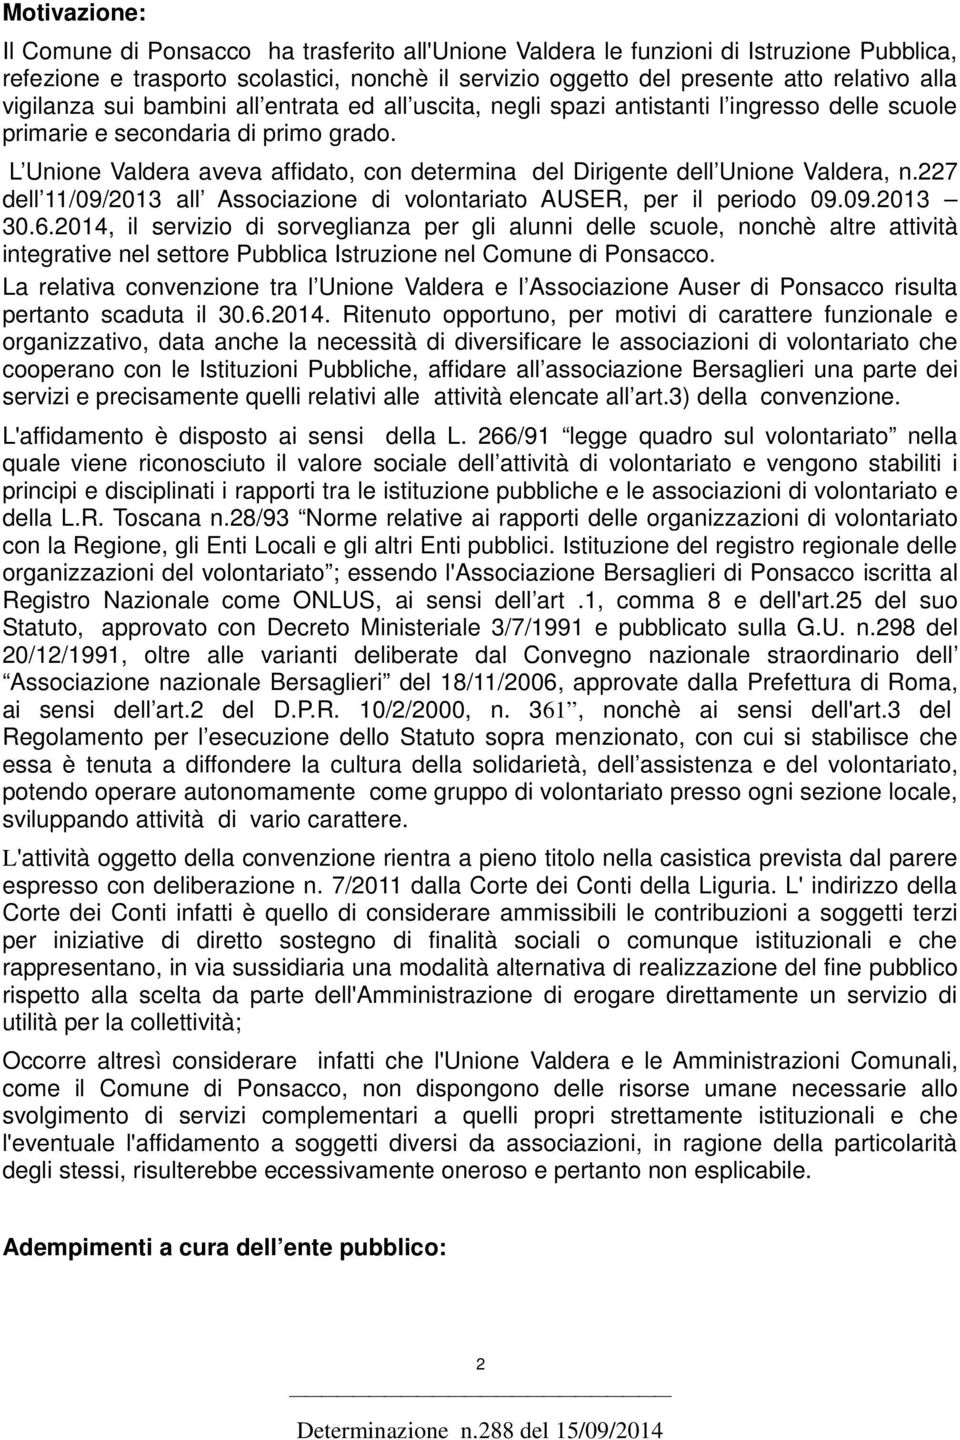 L Unione Valdera aveva affidato, con determina del Dirigente dell Unione Valdera, n.227 dell 11/09/2013 all Associazione di volontariato AUSER, per il periodo 09.09.2013 30.6.